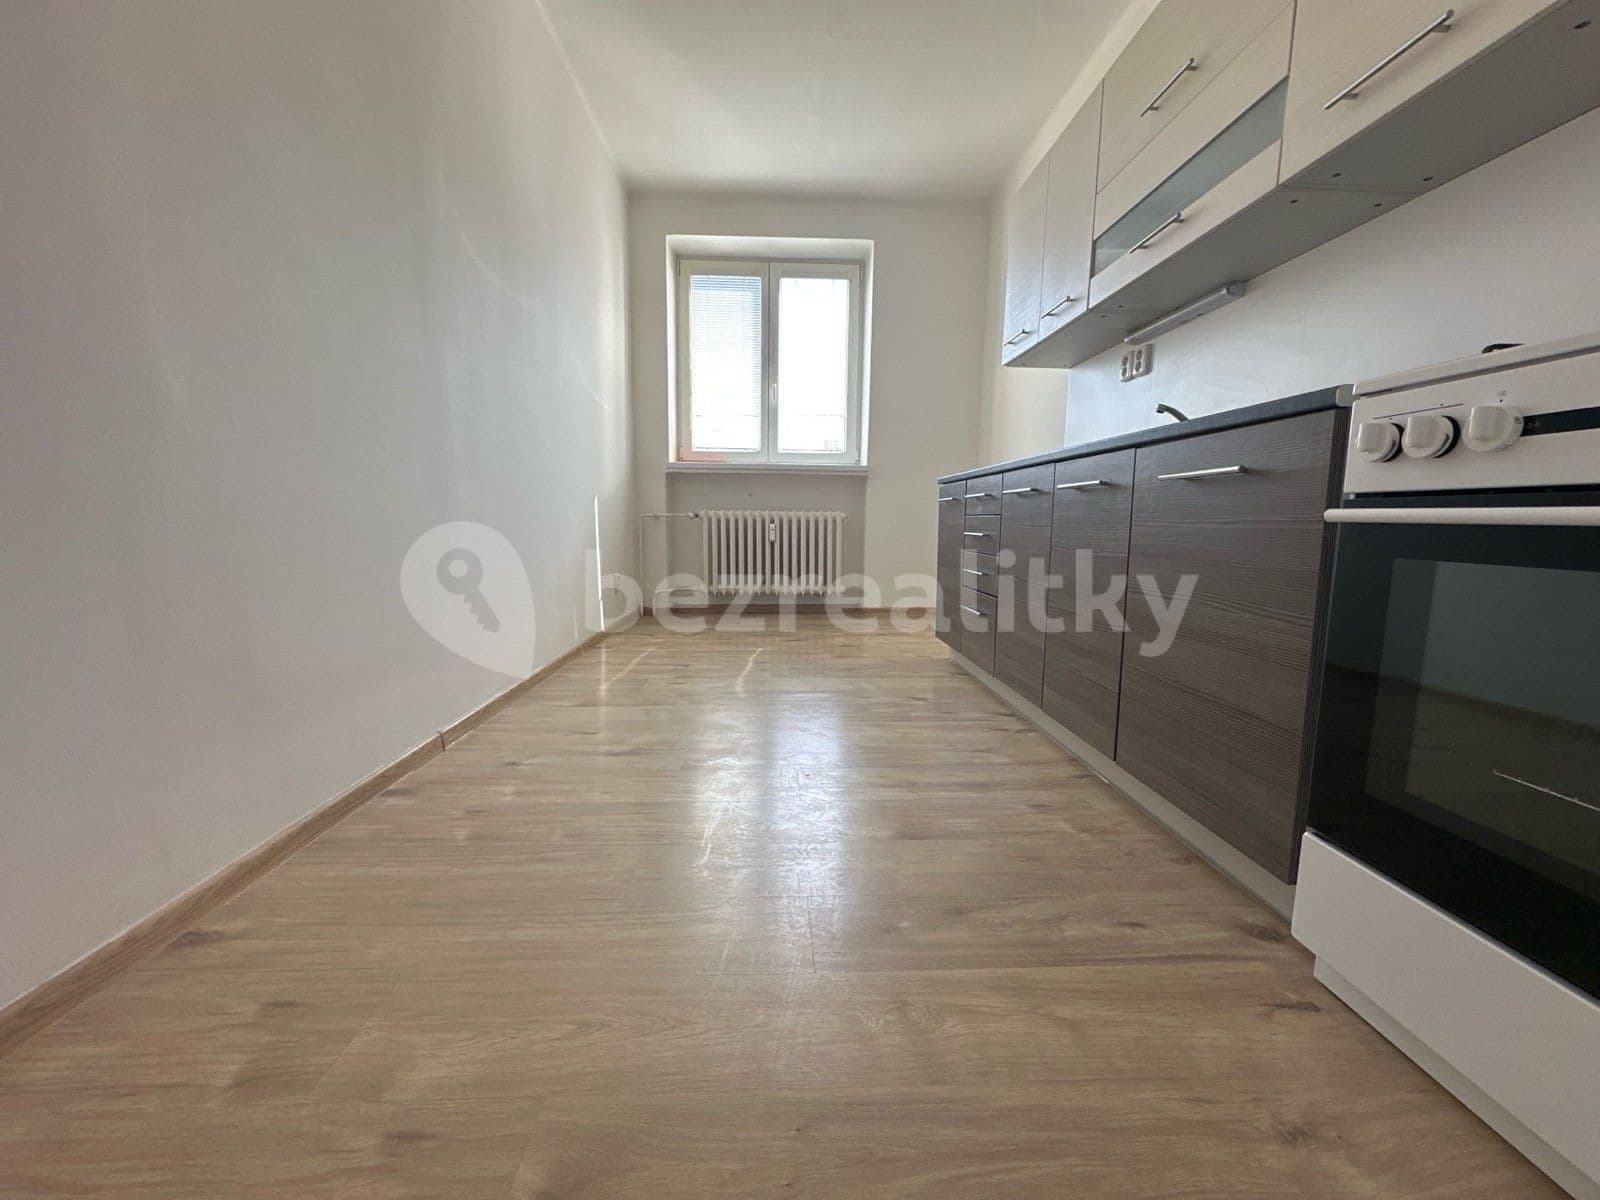 2 bedroom flat to rent, 52 m², Matěje Kopeckého, Ostrava, Moravskoslezský Region